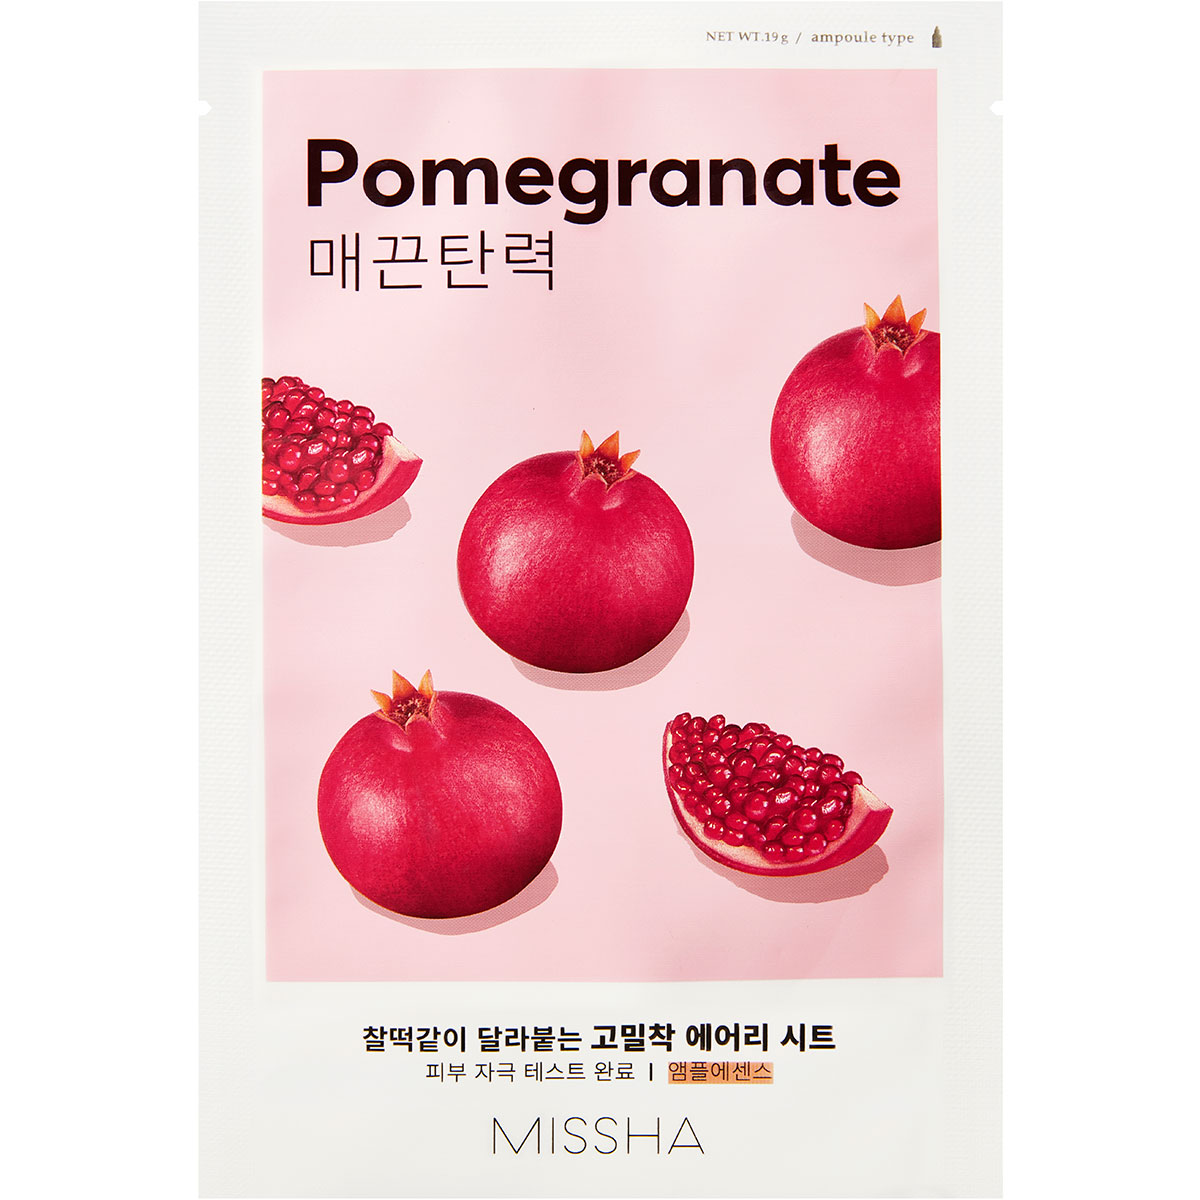 Airy Fit Sheet Mask (Pomegranate), 19 g MISSHA K Beauty Masker